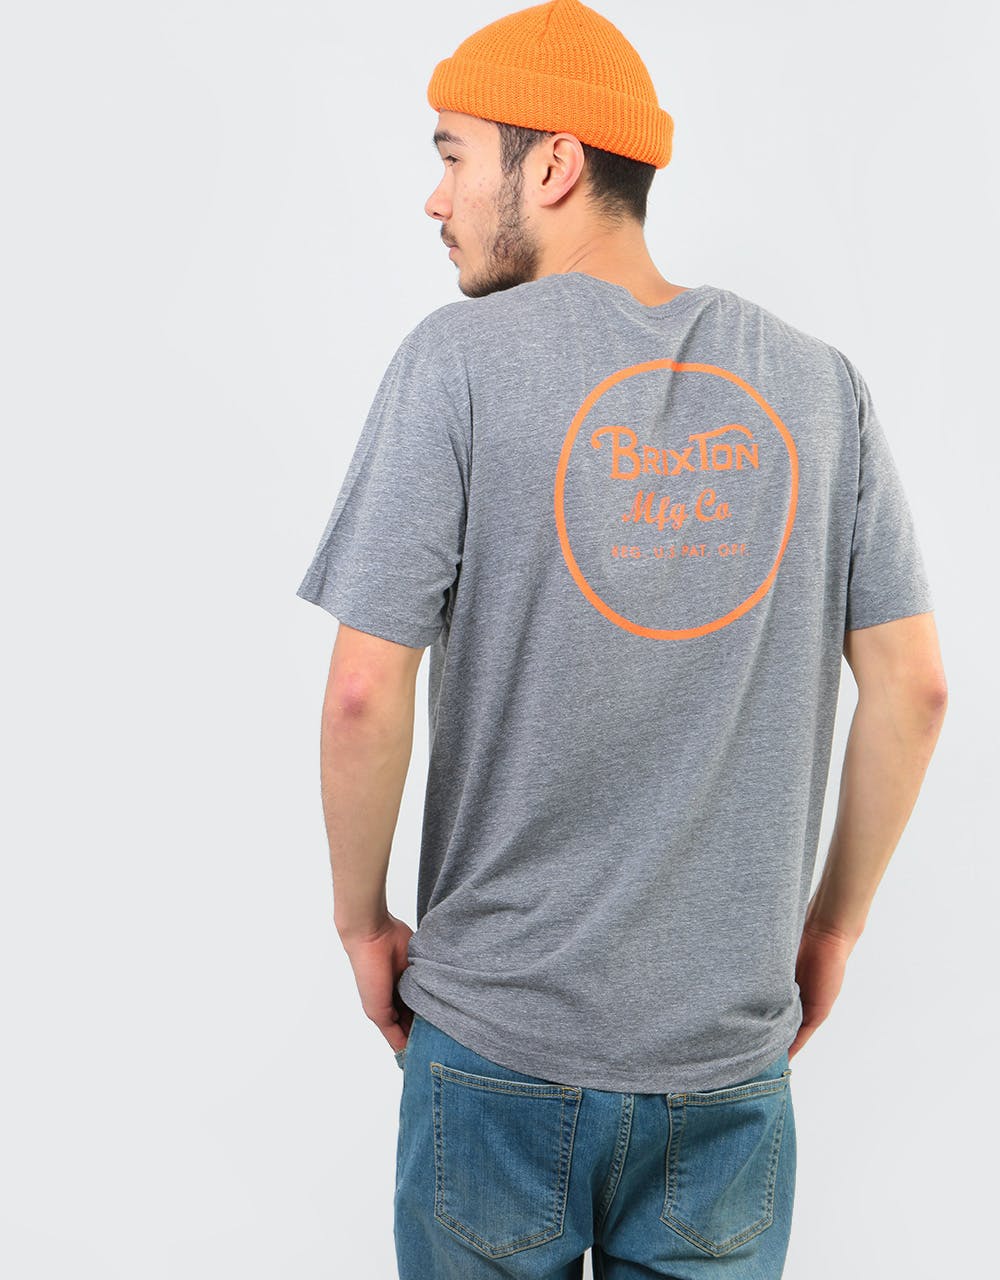 Brixton Wheeler II Premium T-Shirt - Heather Grey/Orange